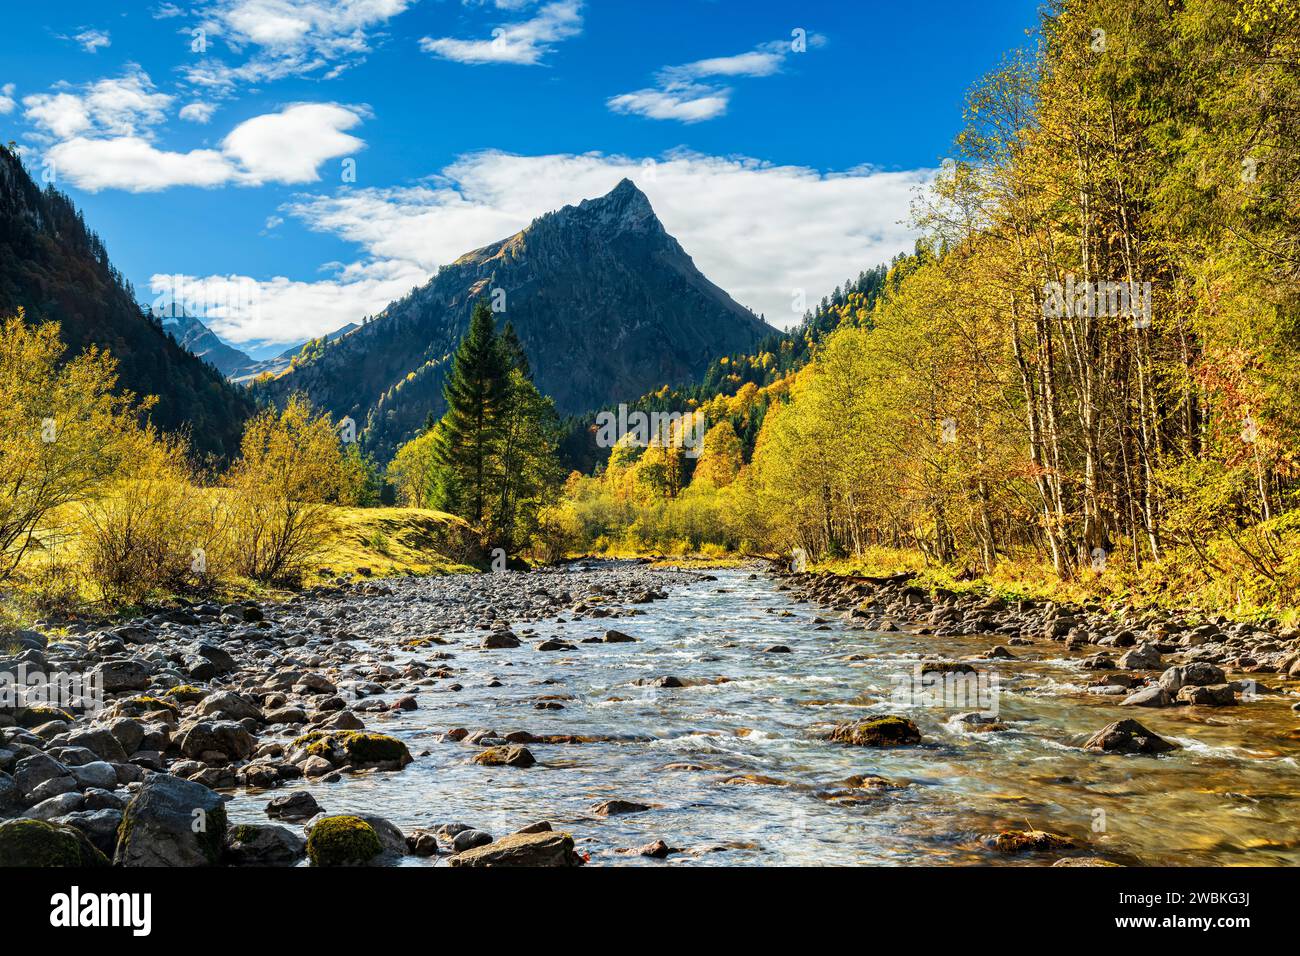 Fiume, montagne e foreste colorate in un pittoresco paesaggio montano in autunno. Ostrach nella valle dell'Hintersteiner, Alpi di Allgäu, Baviera, Germania Foto Stock